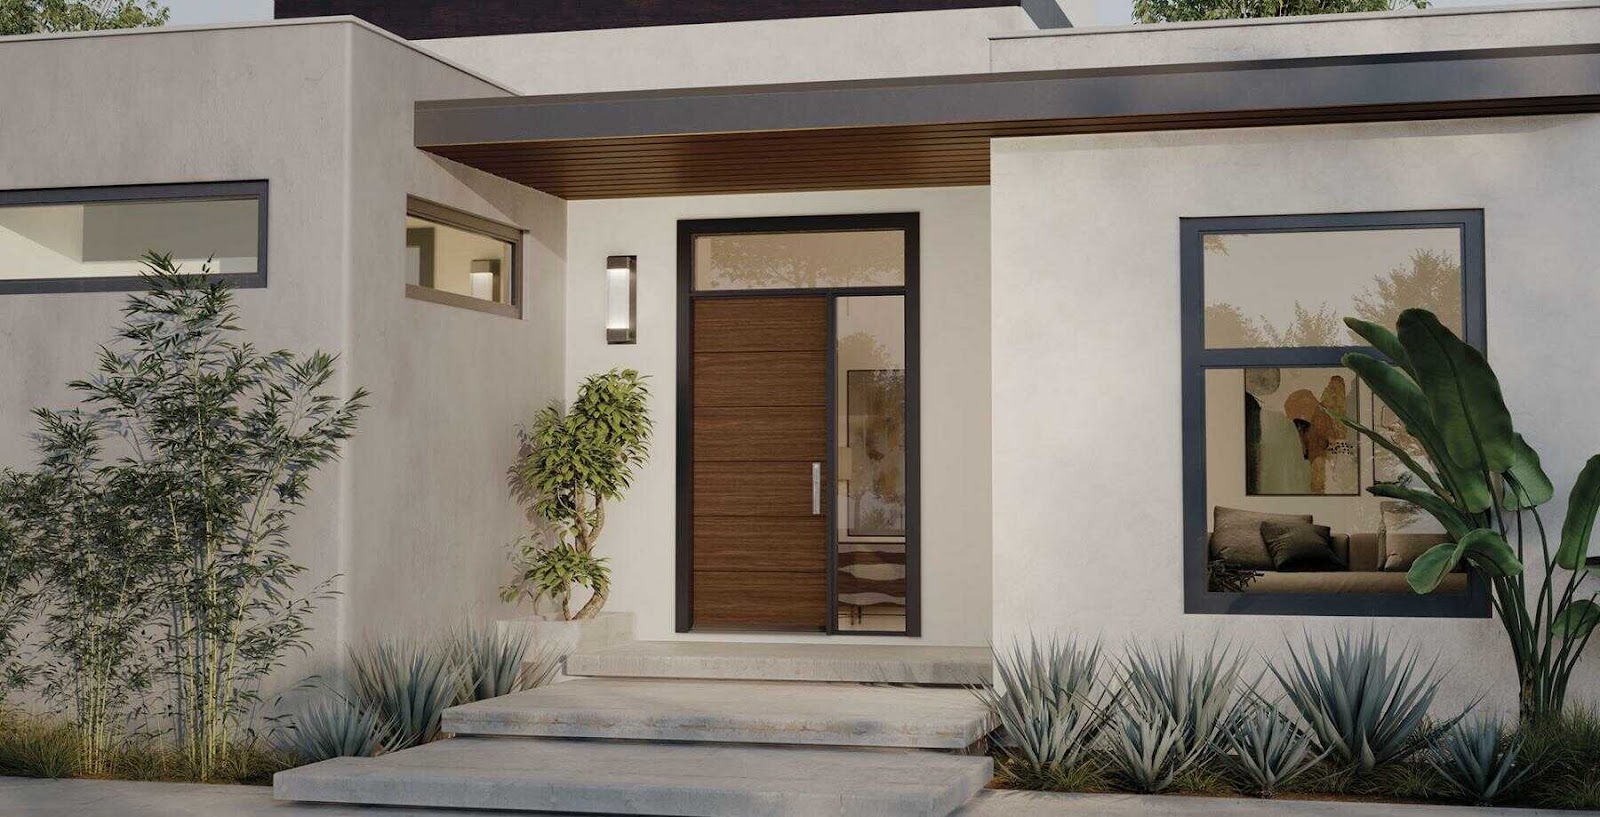 Bên cạnh phong thuỷ, cửa chính vẫn cần đảm bảo tính thẩm mỹ và phù hợp với thiết kế của ngôi nhà.